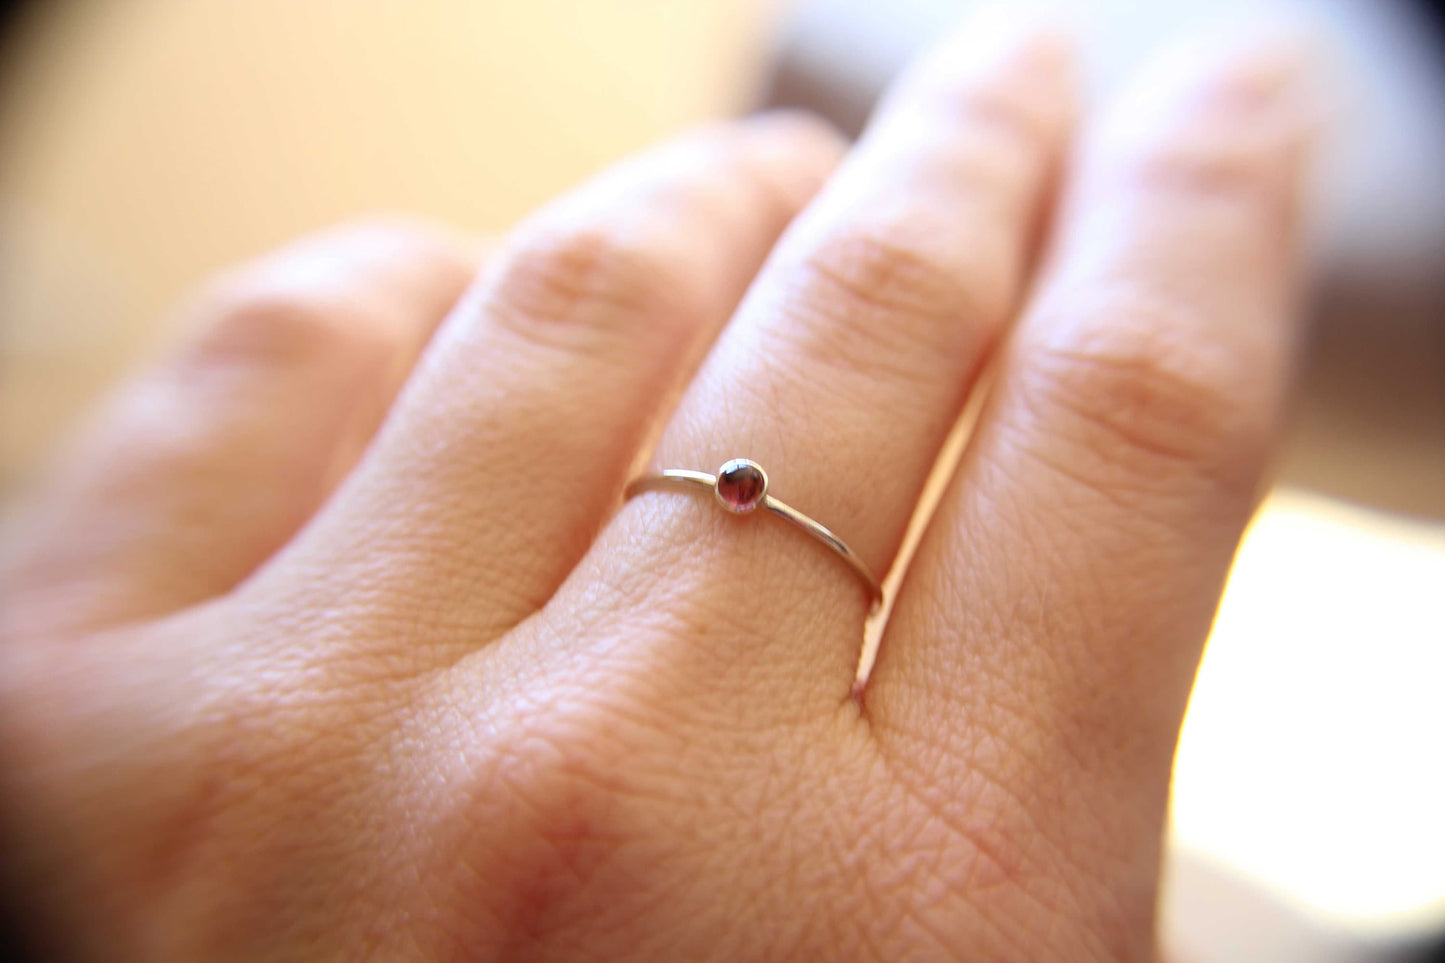 Tourmaline Ring, Pink Tourmaline Ring, Natural Gemstone Ring, Romantic Ring, Valentines, Pink Gemstone, Tiny Stacking Ring, Textured, Gift